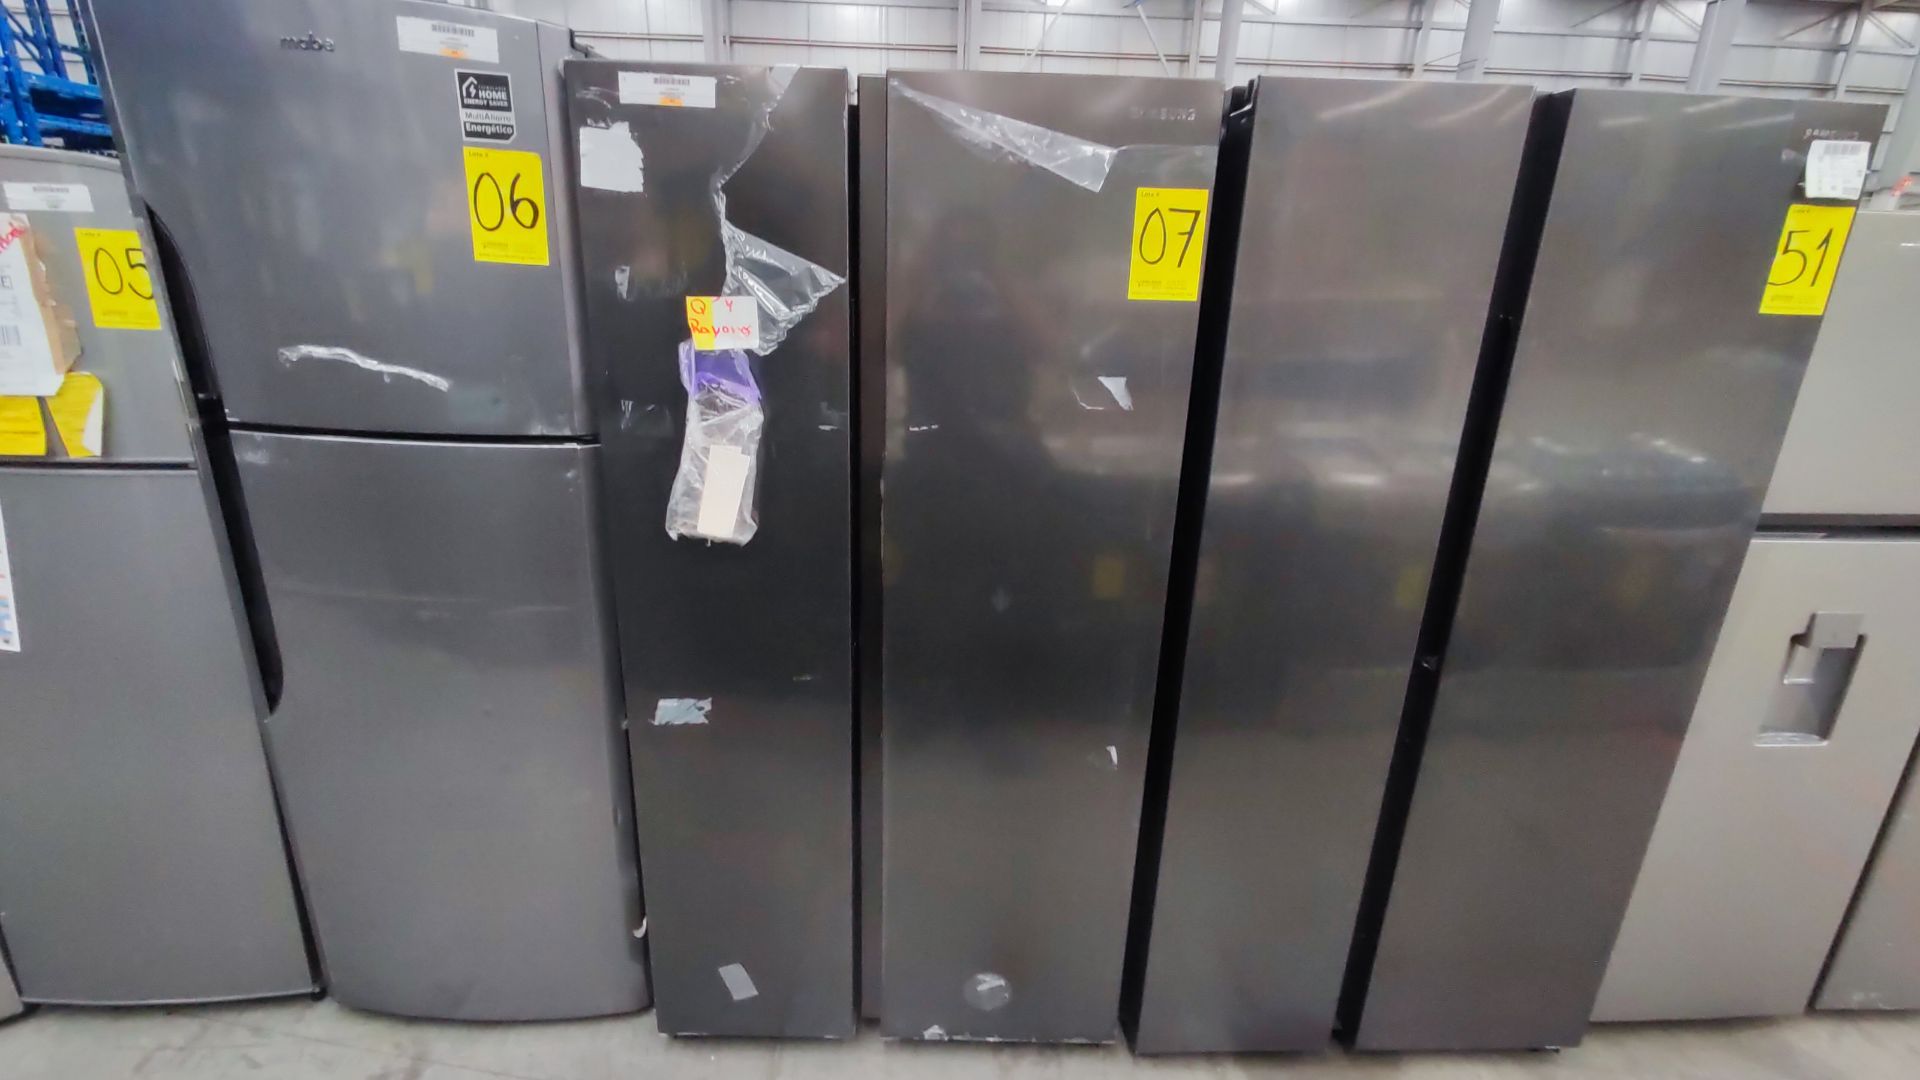 1 Refrigerador Marca Samsung, Modelo RS28T5B00B1, Serie 0B2V4BBT300506M, Color Gris Detalles Estéti - Image 5 of 11